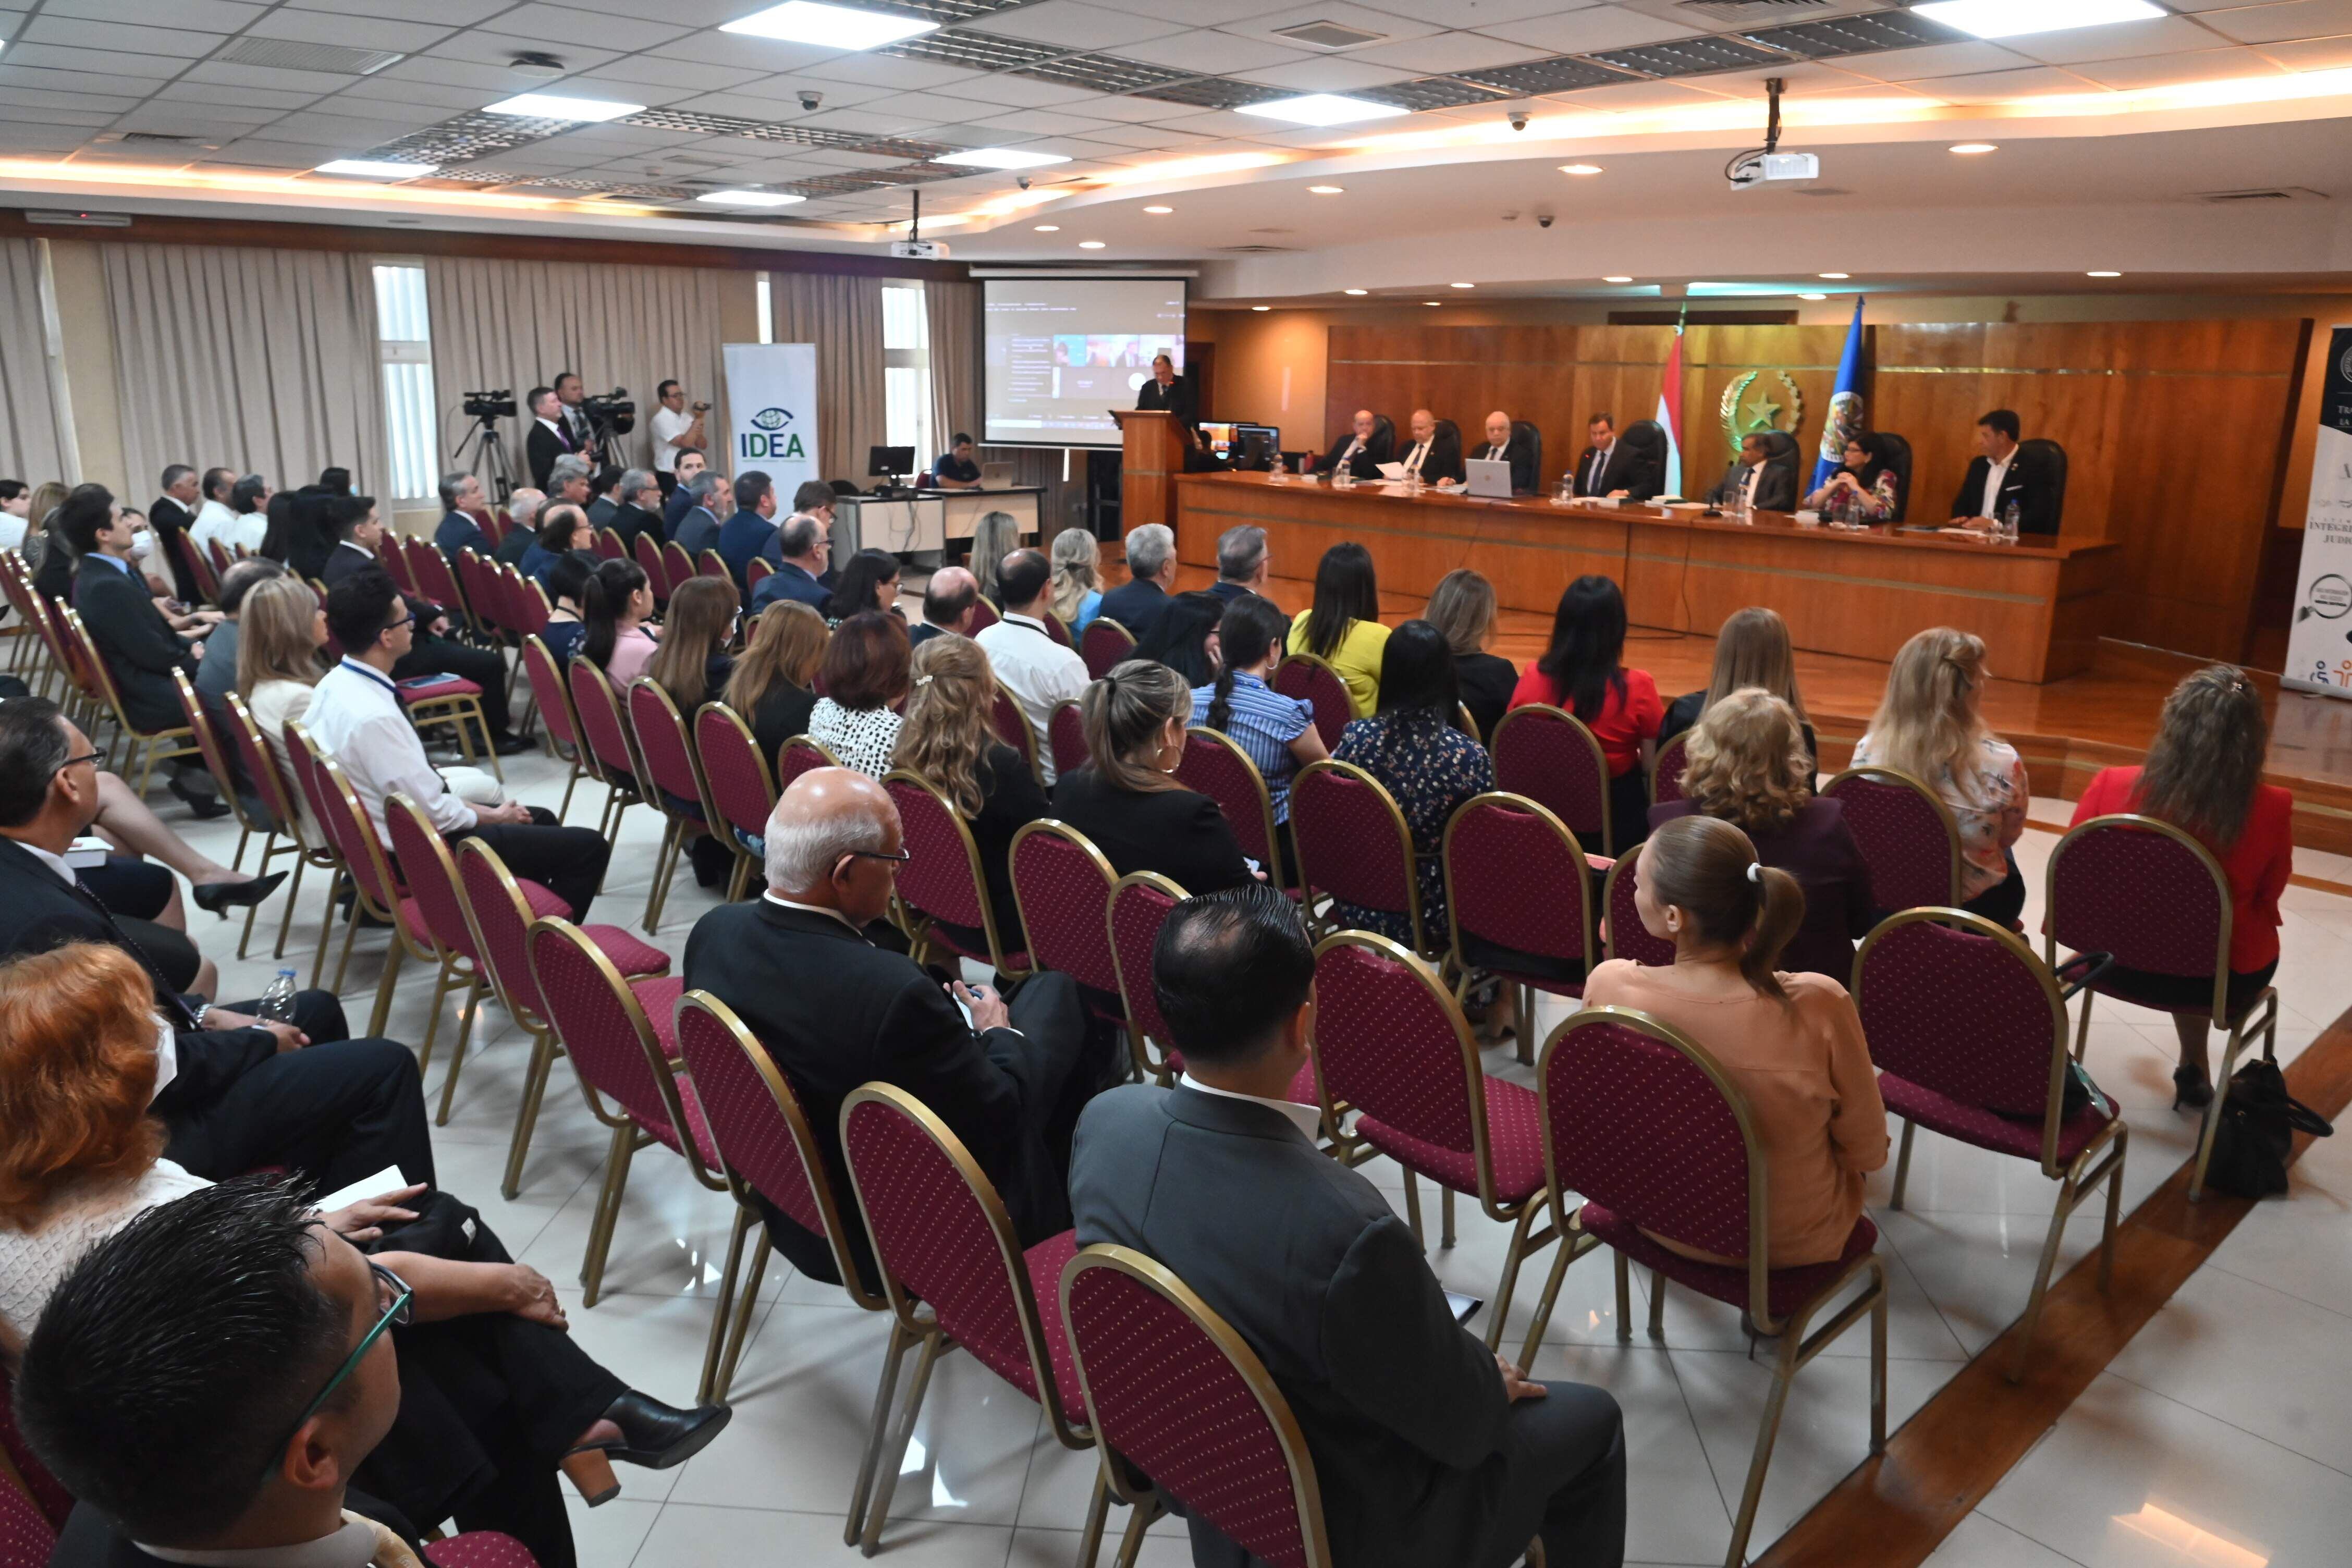 Edison Lanza estuvo en Paraguay para la presentación de un trabajo sobre la actualización de la jurisprudencia del Sistema Interamericano sobre libertad de expresión. Estuvo acompañando al presidente de la Corte Interamericana de Derechos Humanos, Ricardo Pérez Manrique.